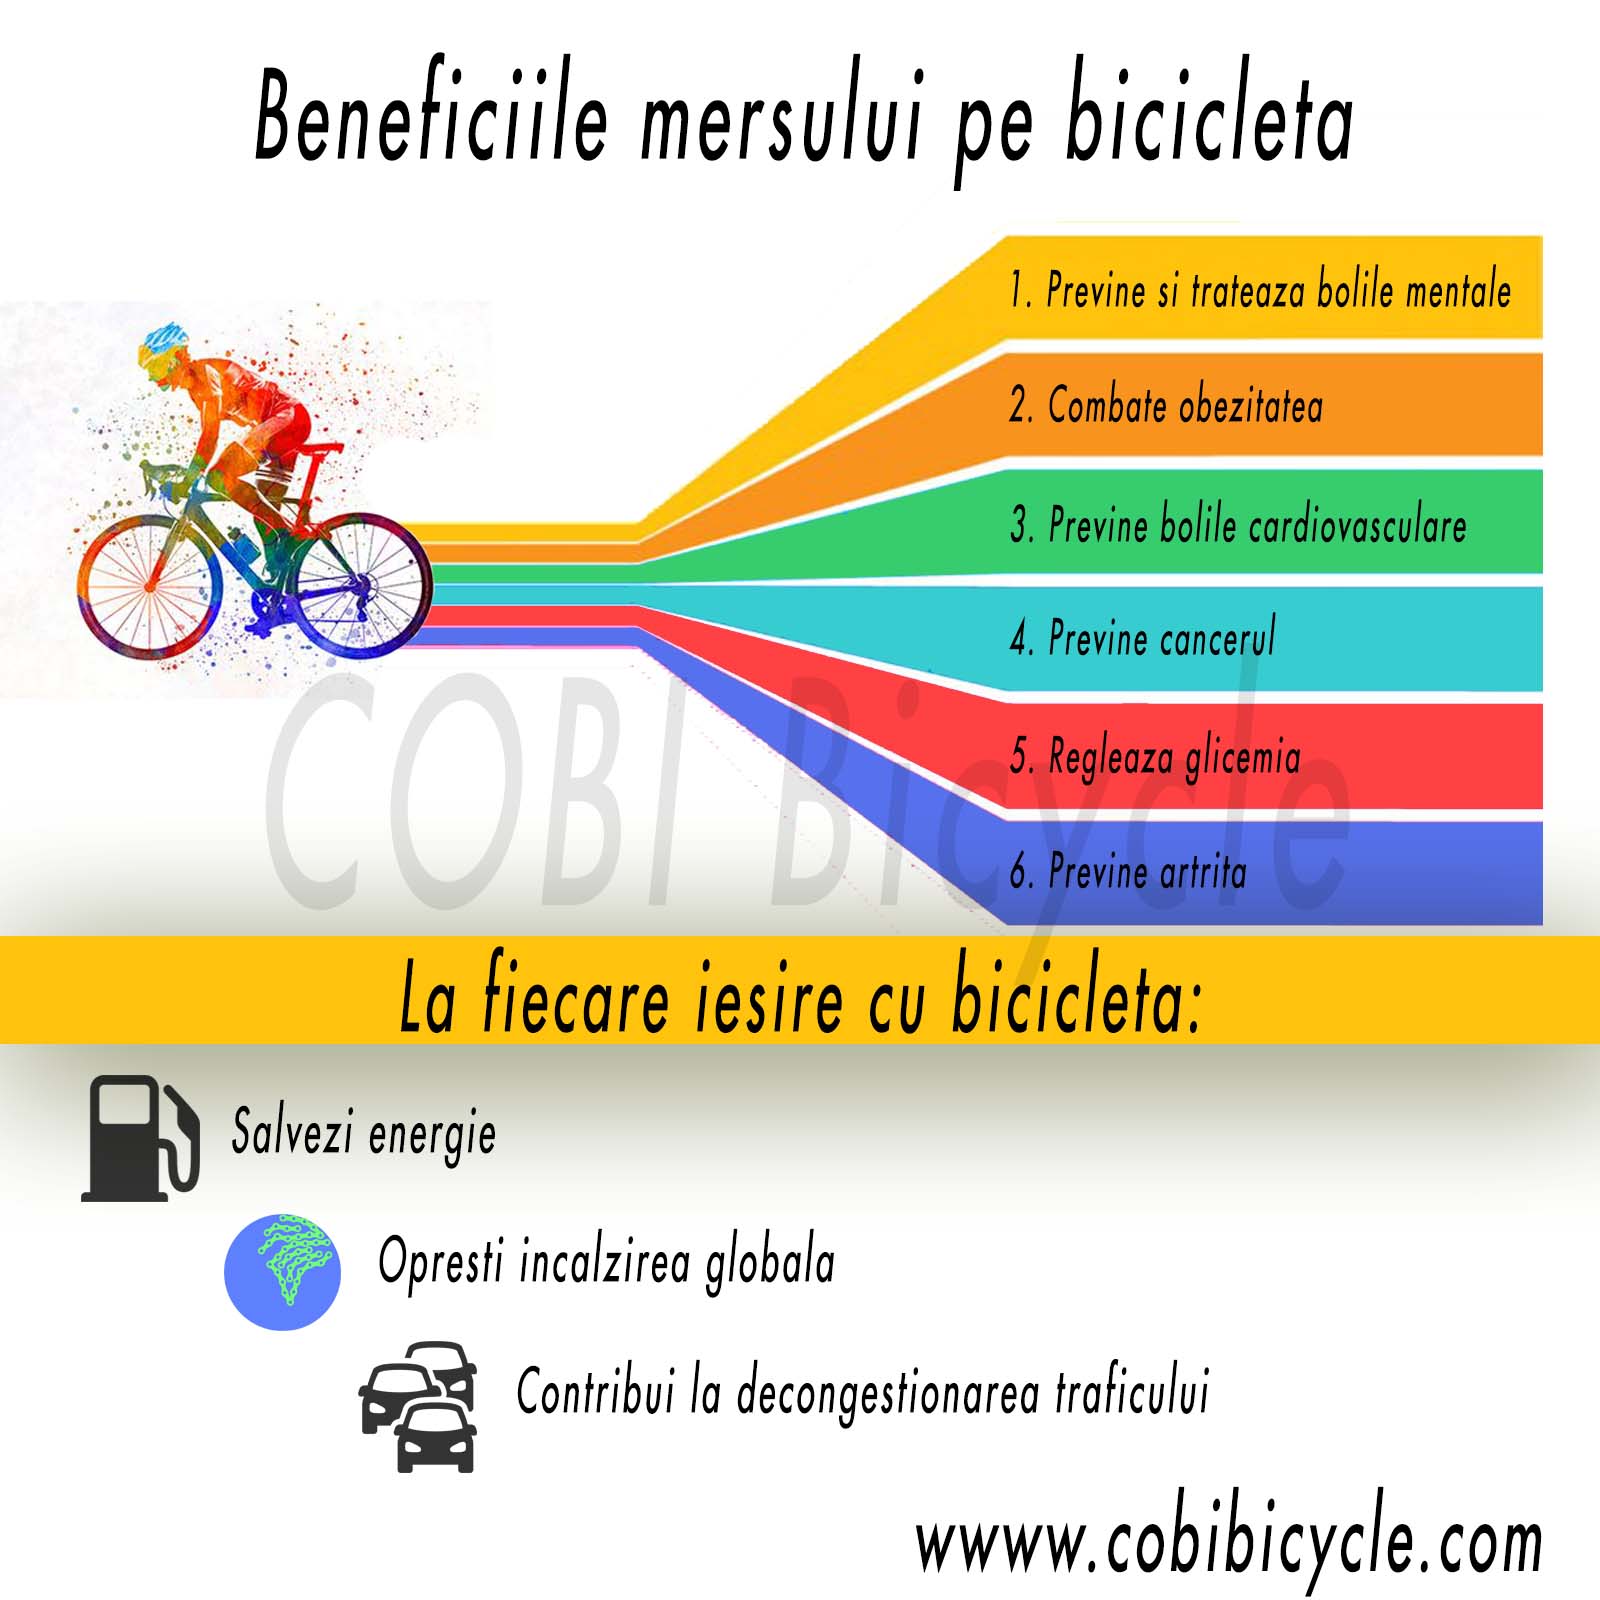 Beneficiile mersului pe bicicleta – De ce sa mergem cu bicicleta?